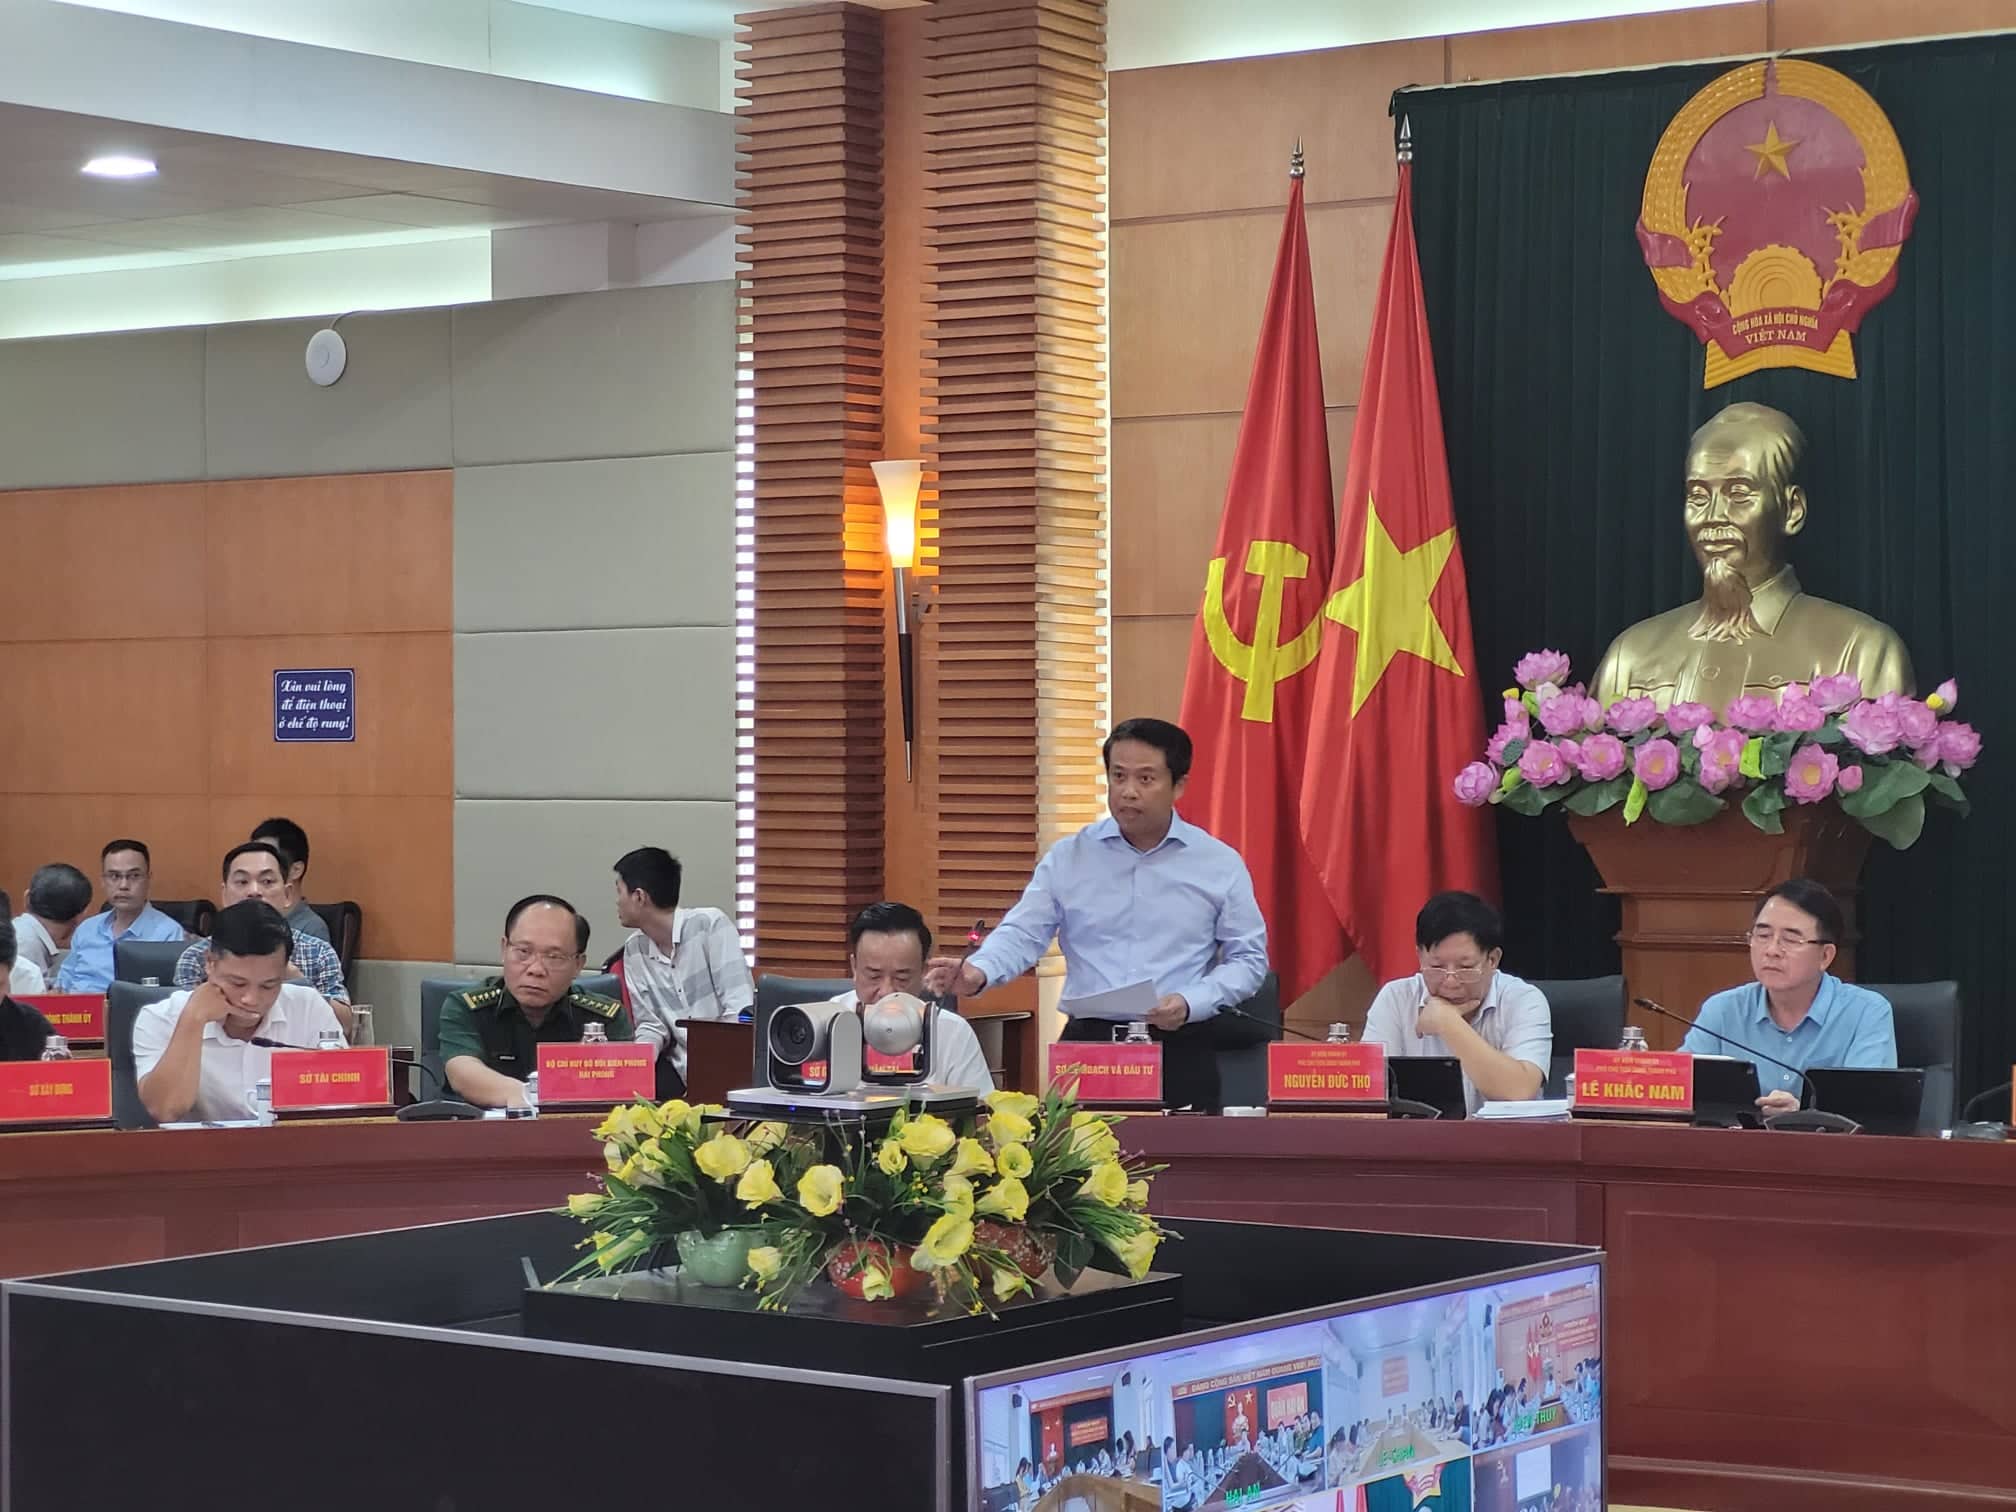 Ông Nguyễn Hoàng Long, Giám đốc Sở Kế hoạch và Đầu tư Hải Phòng báo cáo tóm tắt về tình hình kinh tế-xã hội thành phố trong tháng 9 và 9 tháng năm 2022 tại phiên họp